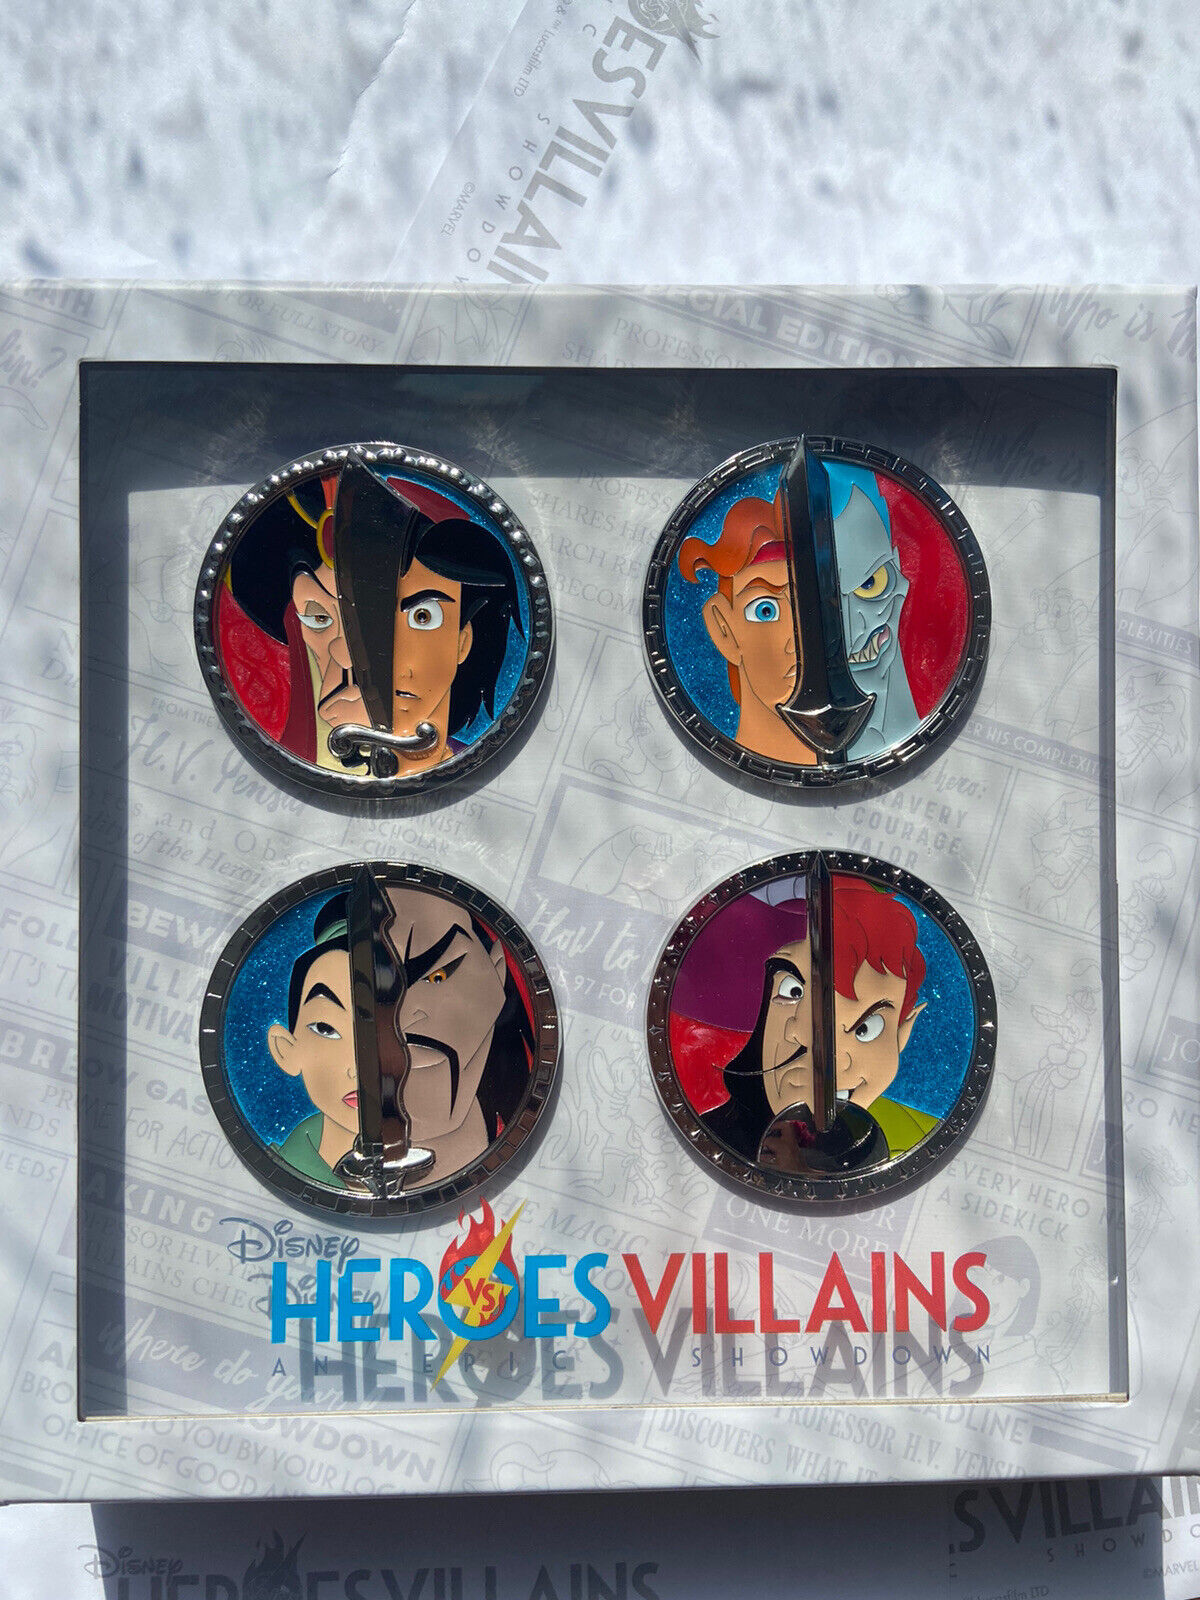 Disney Heroes Vs. Villains Face to Face 4 Pin Box Set LE 500 PreOrder Mulan 